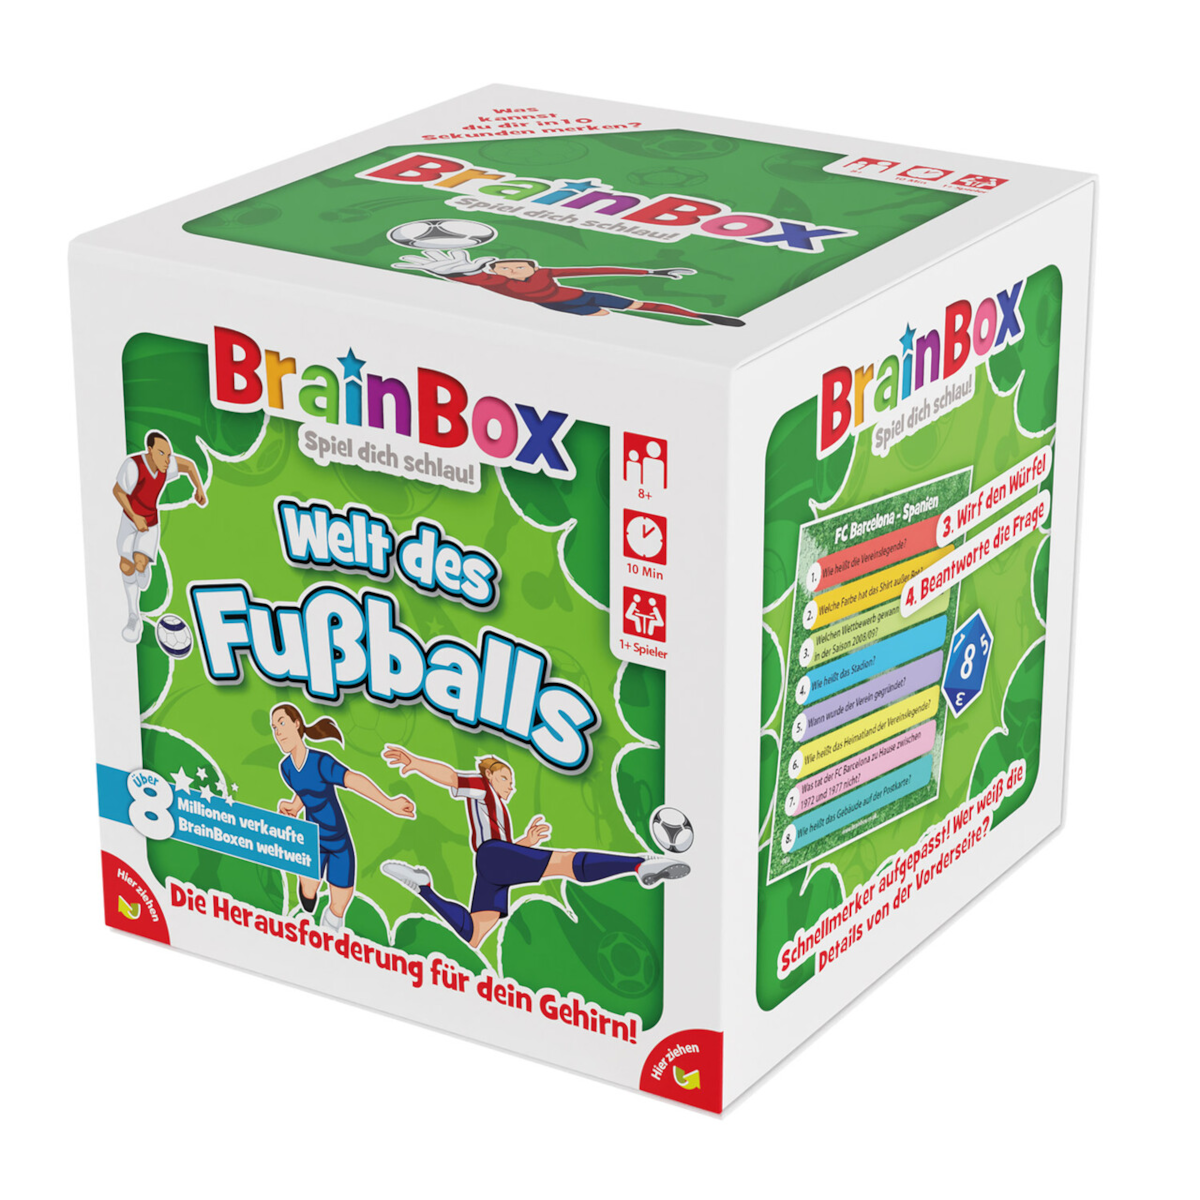 Die neue BrainBox "Welt des Fußballs" - spannender Lernspaß für alle Fußballfans!